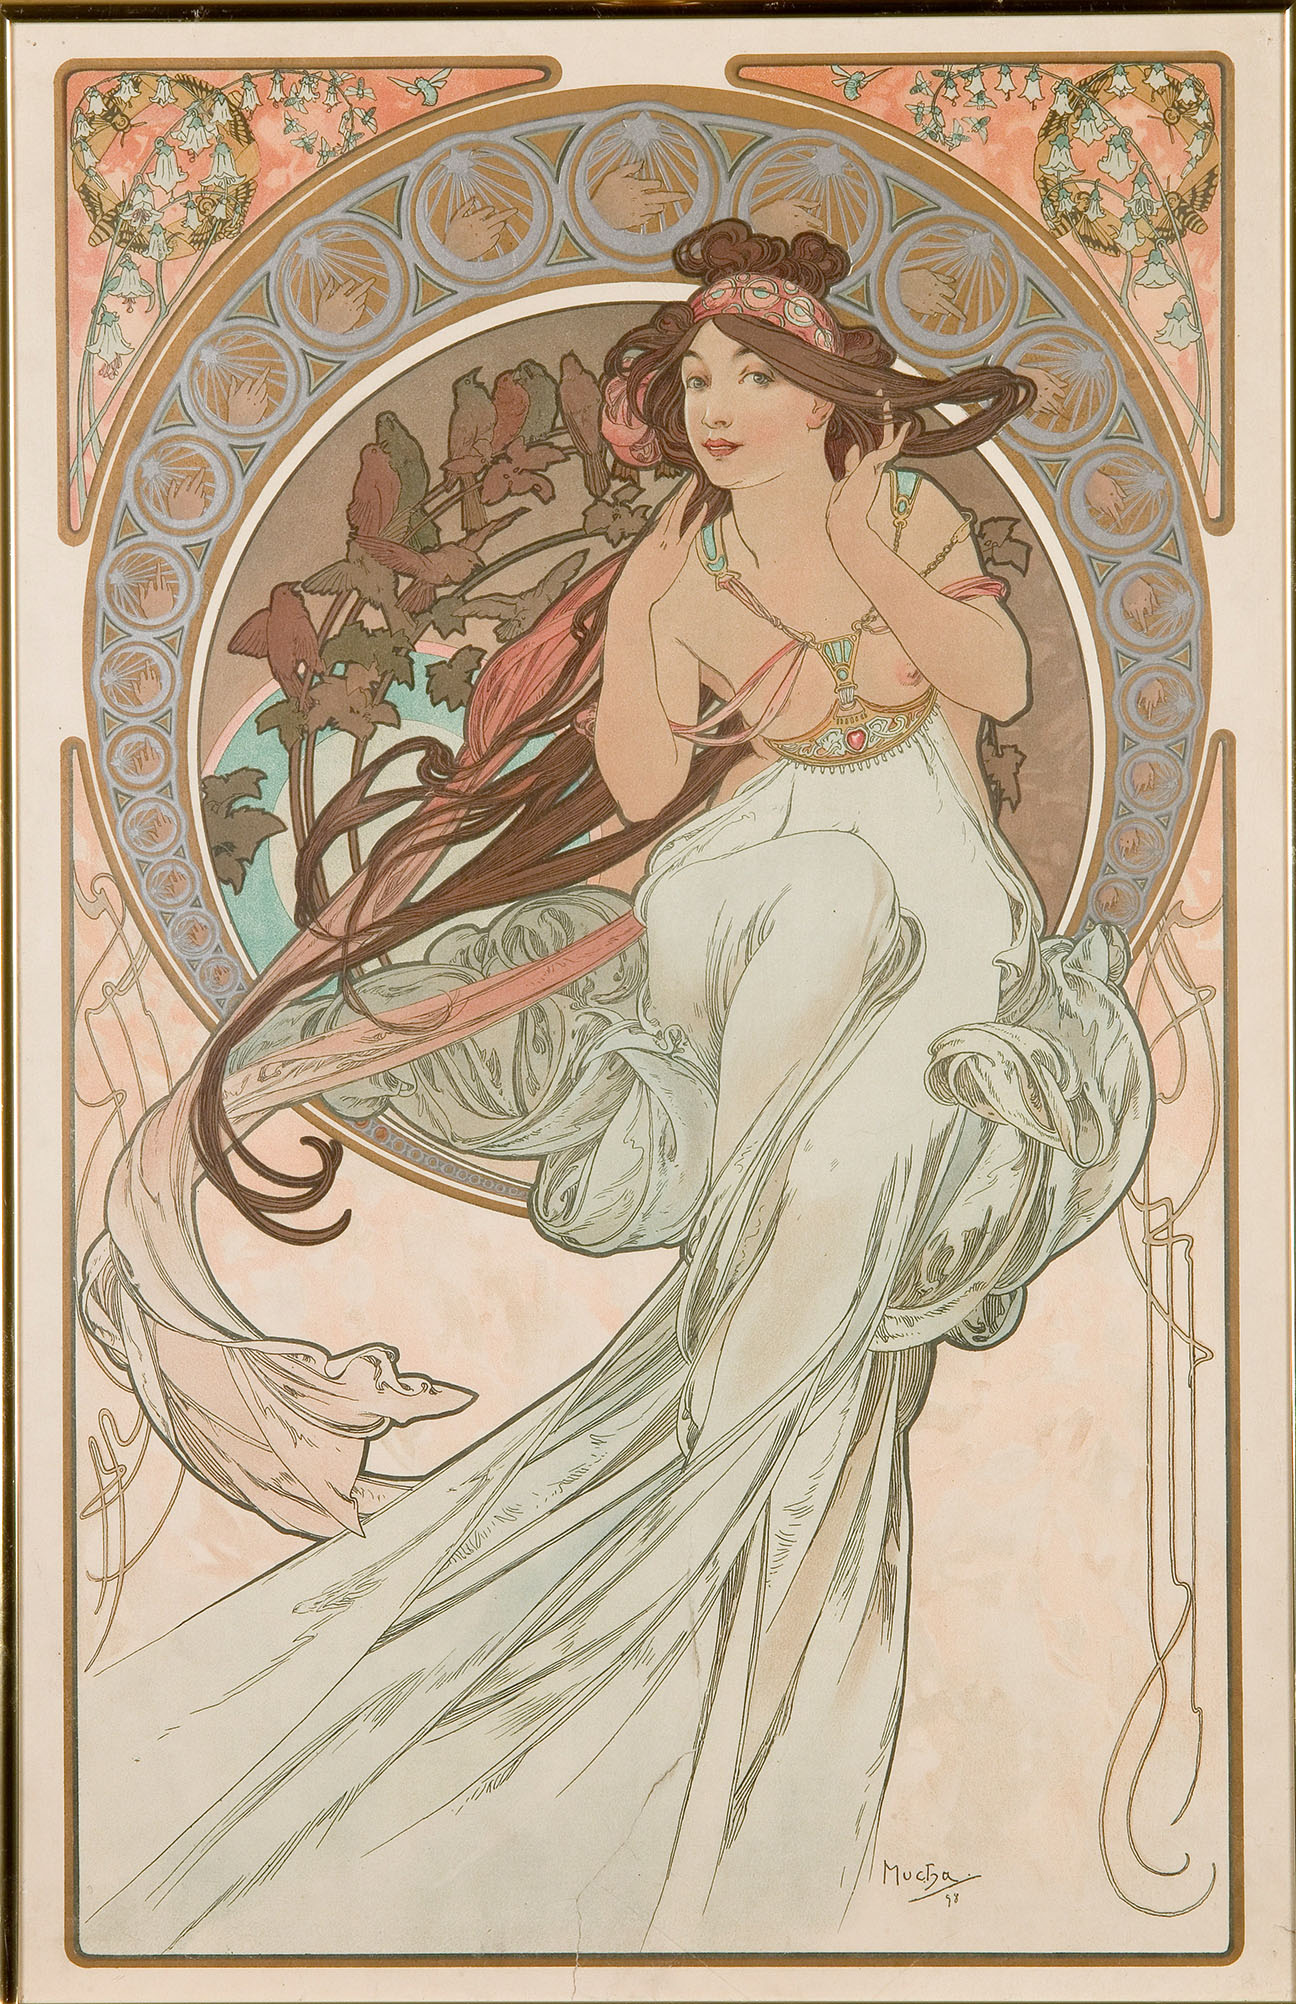 Alfons Mucha (1860-1939), Les Arts: Musique, Danse, Poesie,Peinture, 1898 Quattro litografie a colori su carta. 60 × 38 cm. UPM inv. n. GP 20 952-20 955